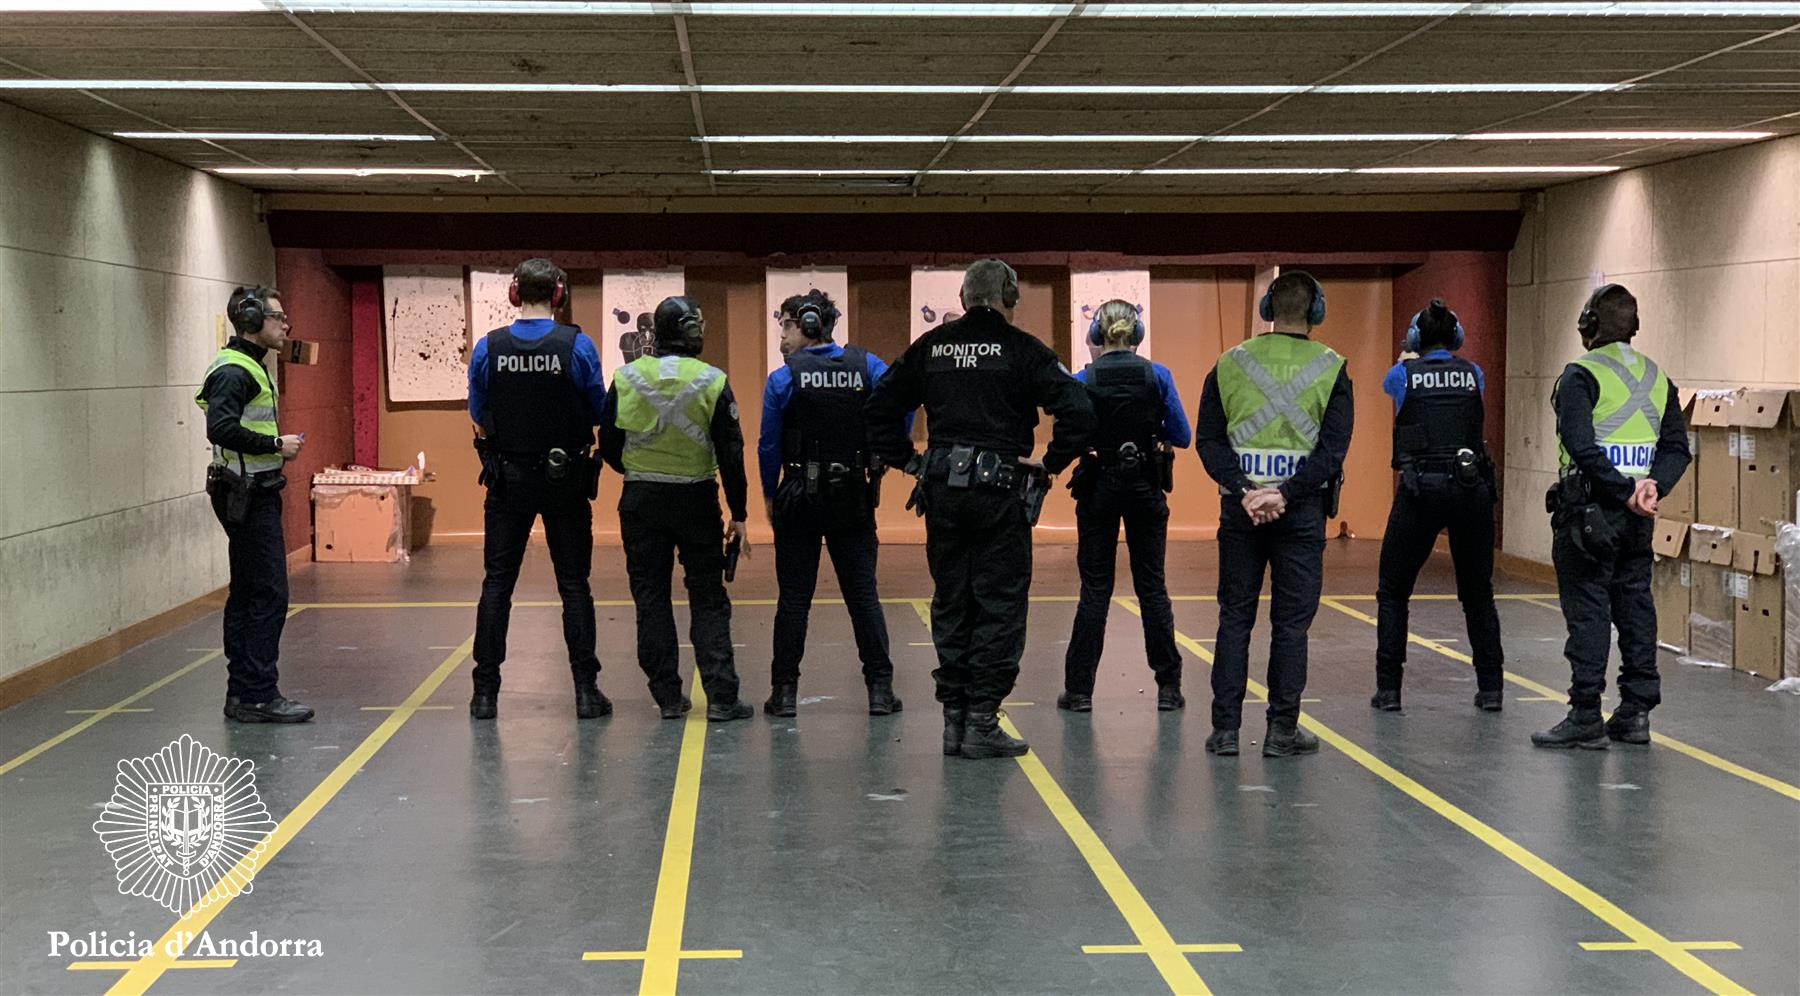 Cinc agents de la Policia es formen per esdevenir monitors de tir